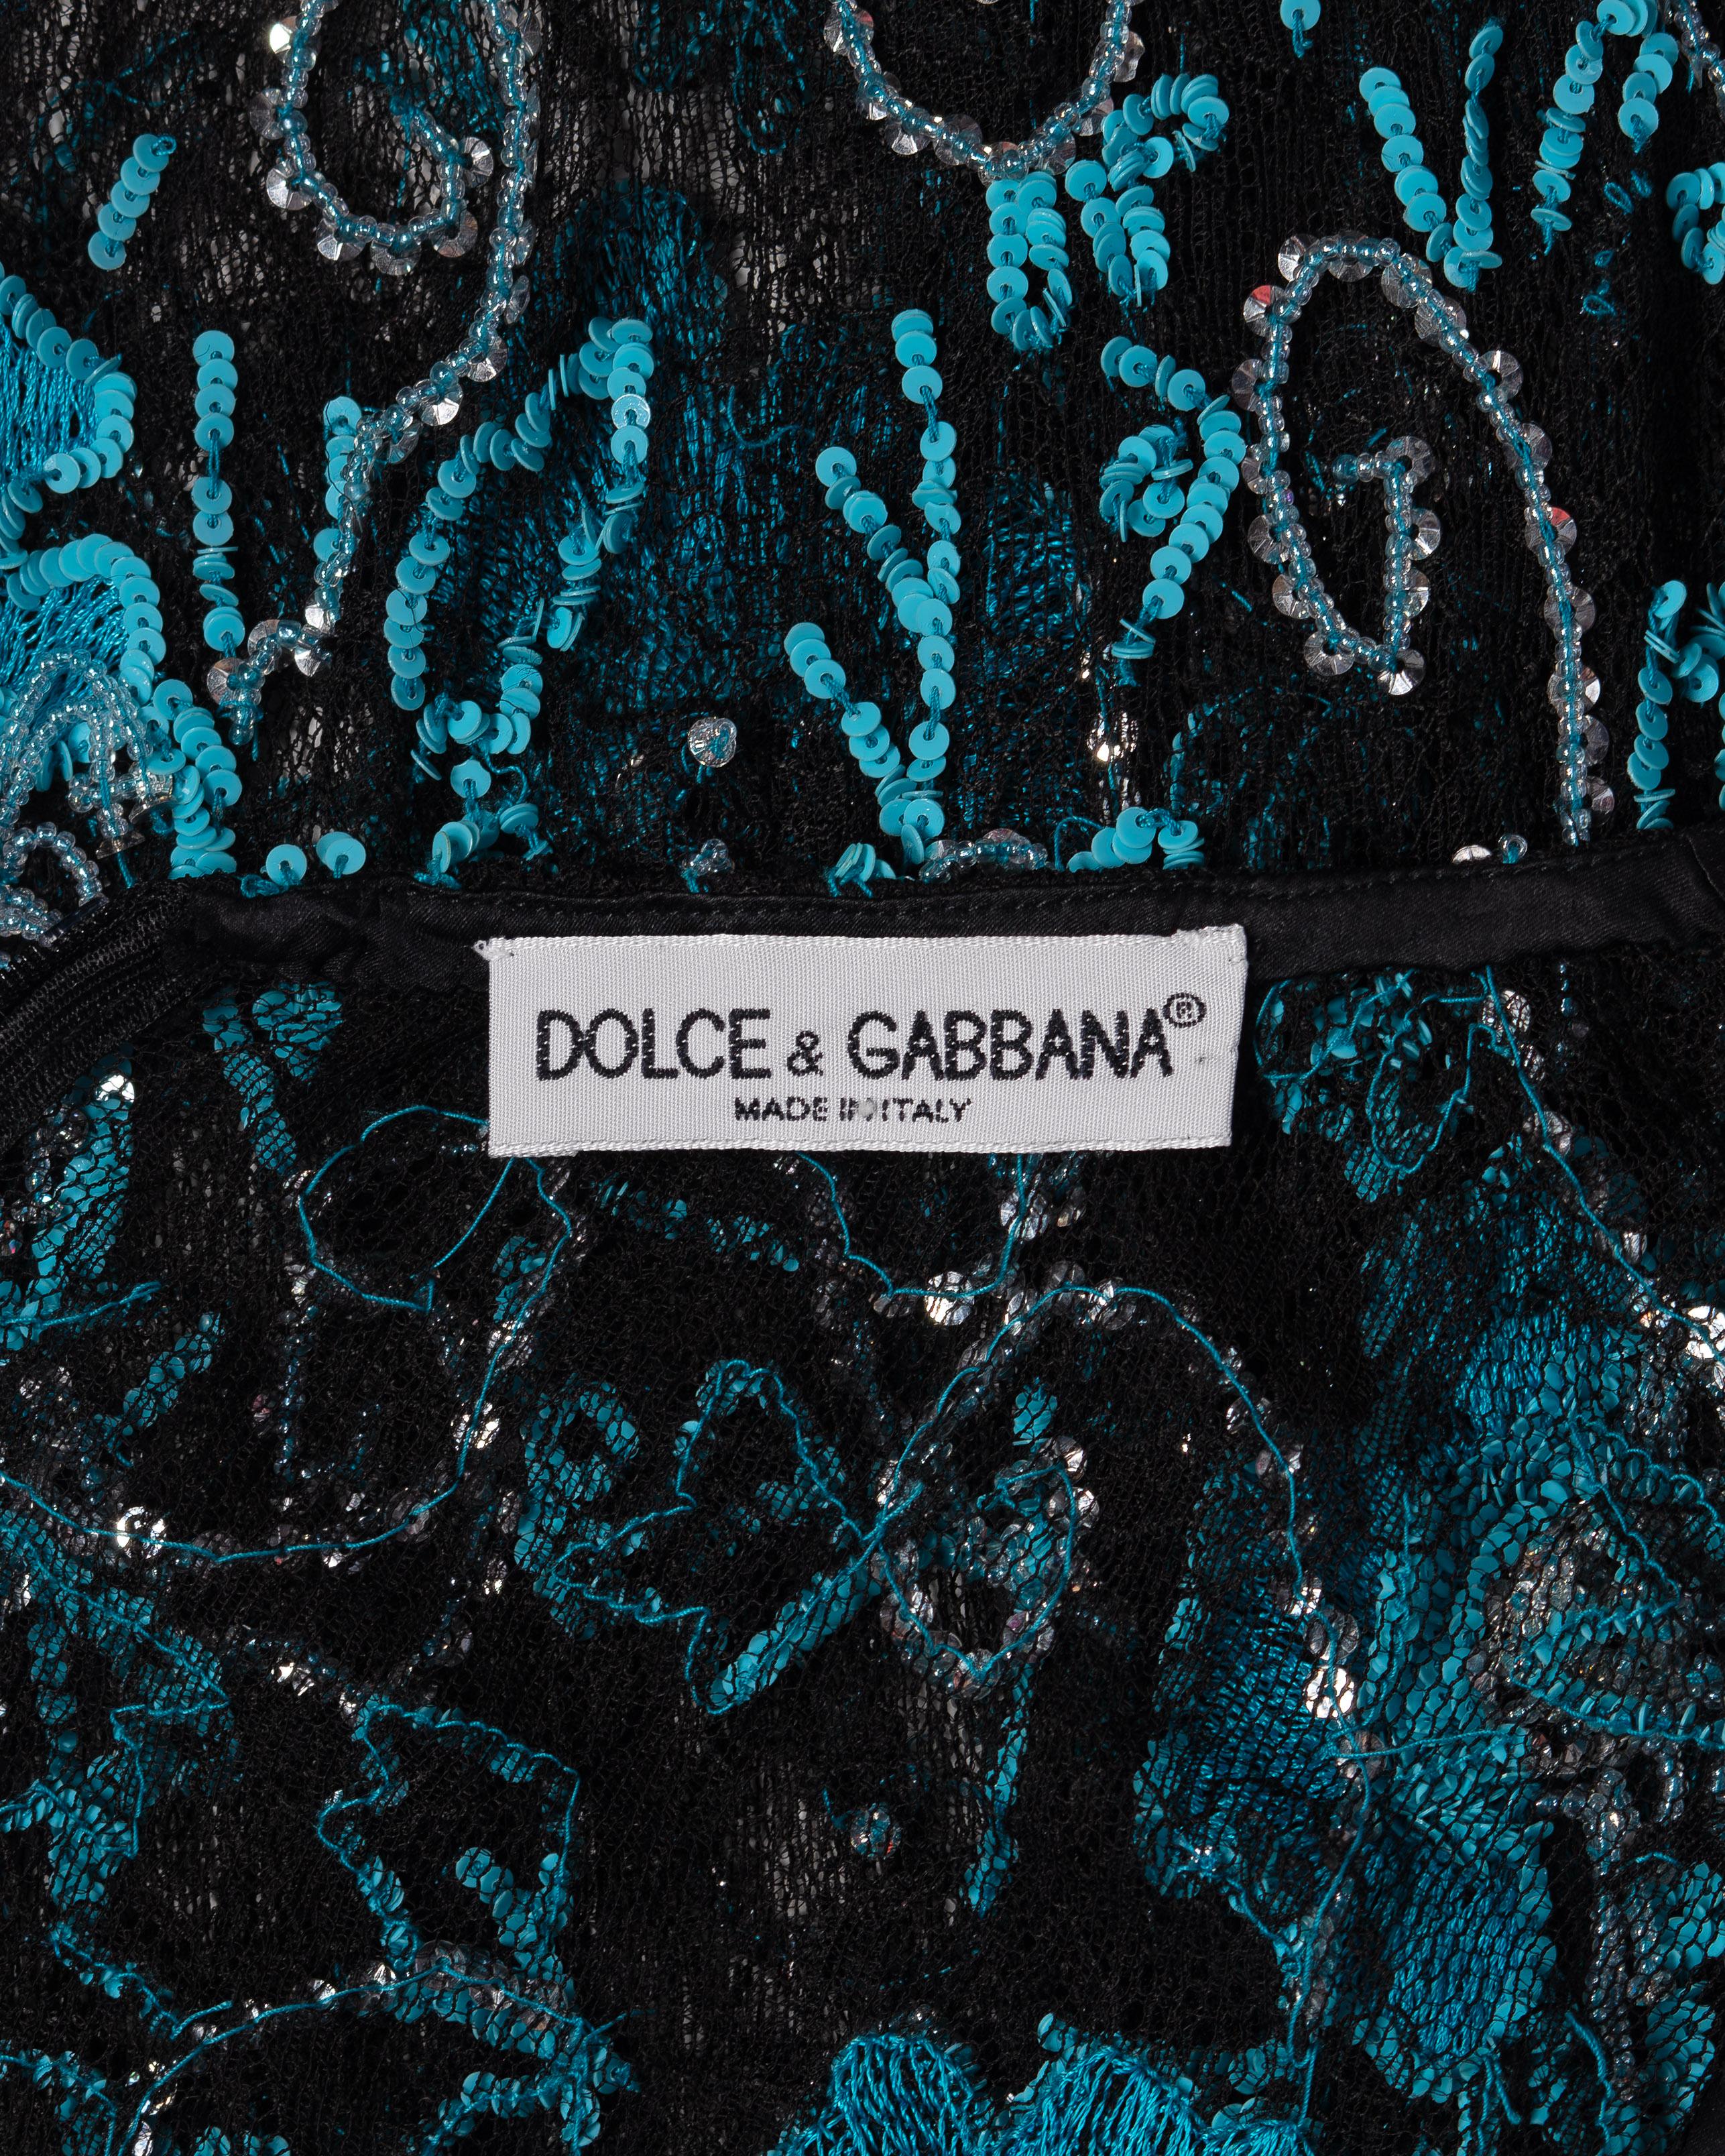 Dolce & Gabbana Blue Floral Embellished Black Lace Evening Dress, FW 1999 For Sale 9